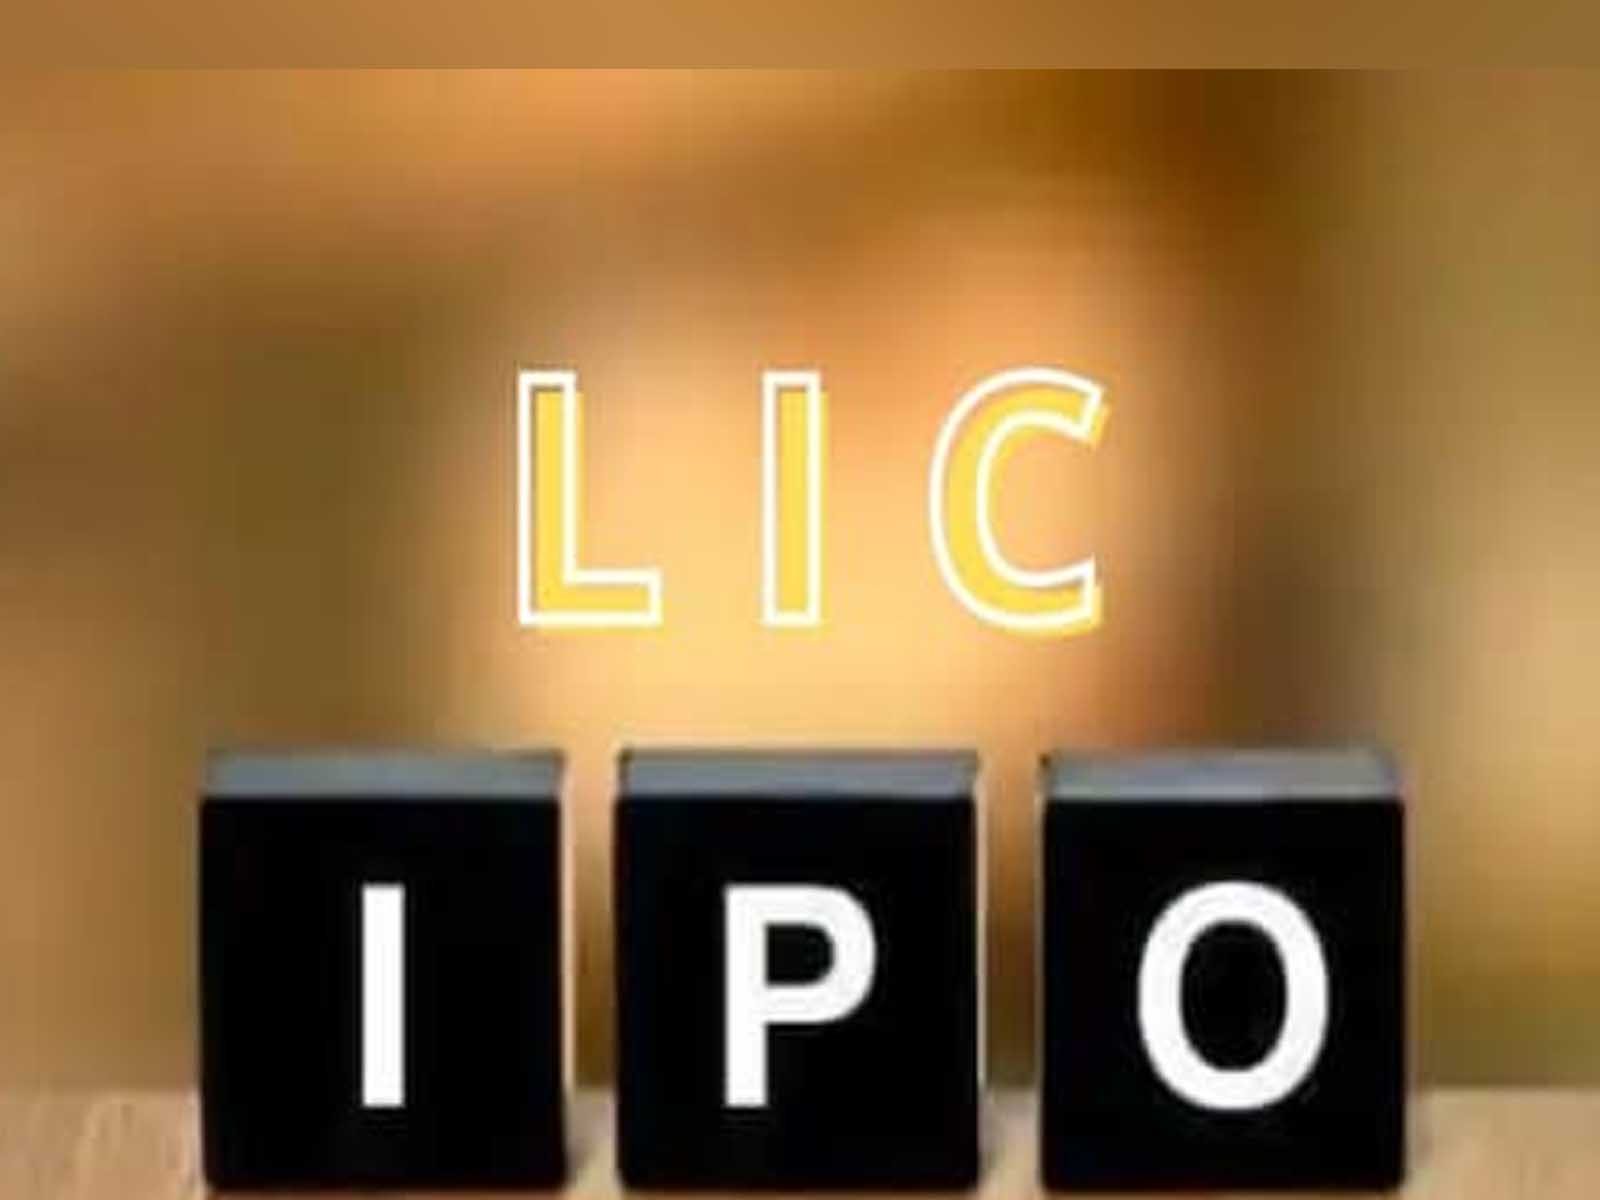 LIC ਦਾ IPO ਪ੍ਰਚੂਨ ਨਿਵੇਸ਼ਕ ਖੁੱਲਿਆ ਅੱਜ, ਜਾਣੋ ਇਸ ਸੰਬੰਧੀ ਅਹਿਮ ਵੇਰਵੇ
